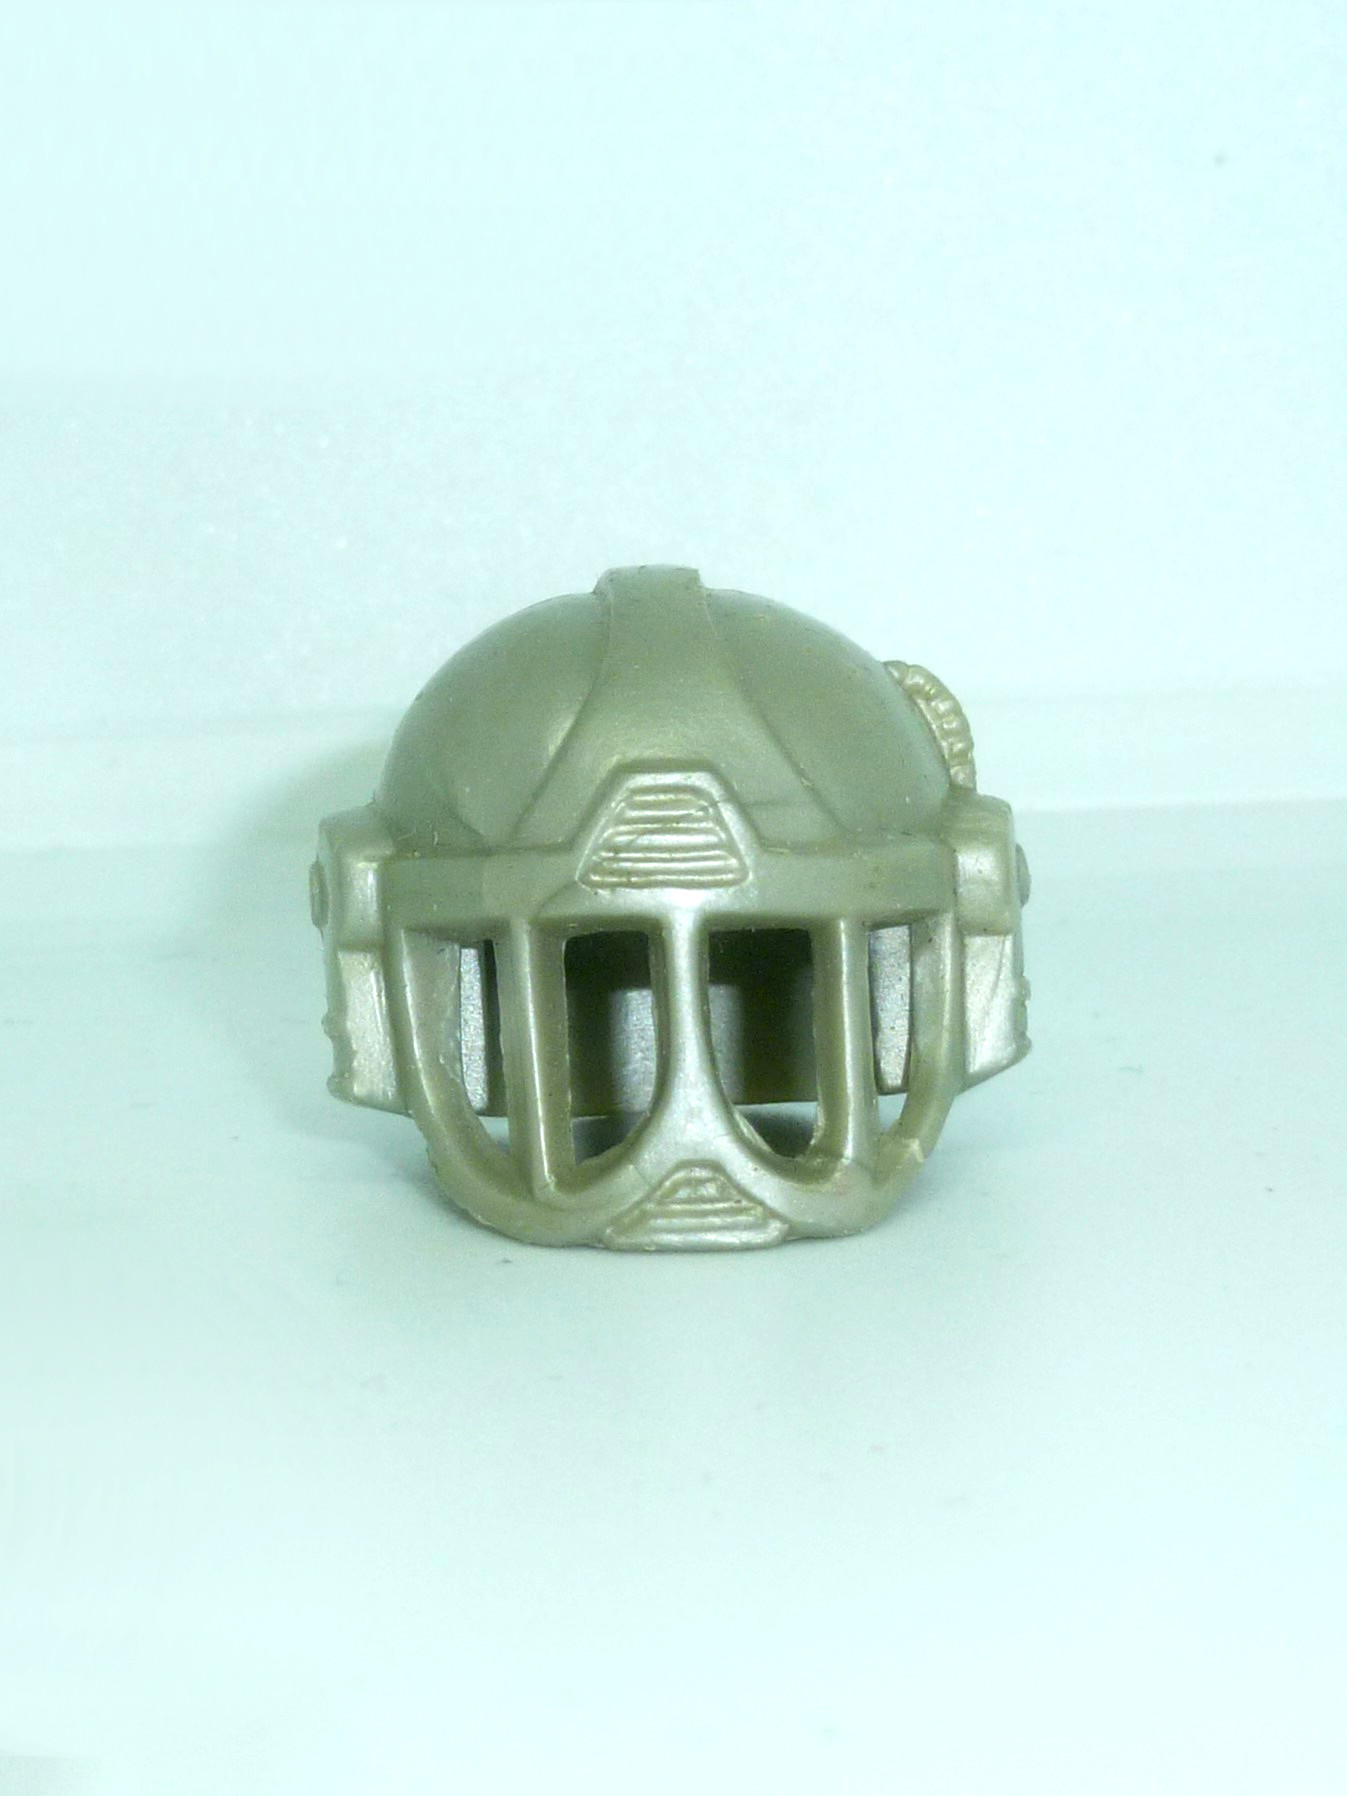 Kayo / Tatarus helmet Mattel 1991